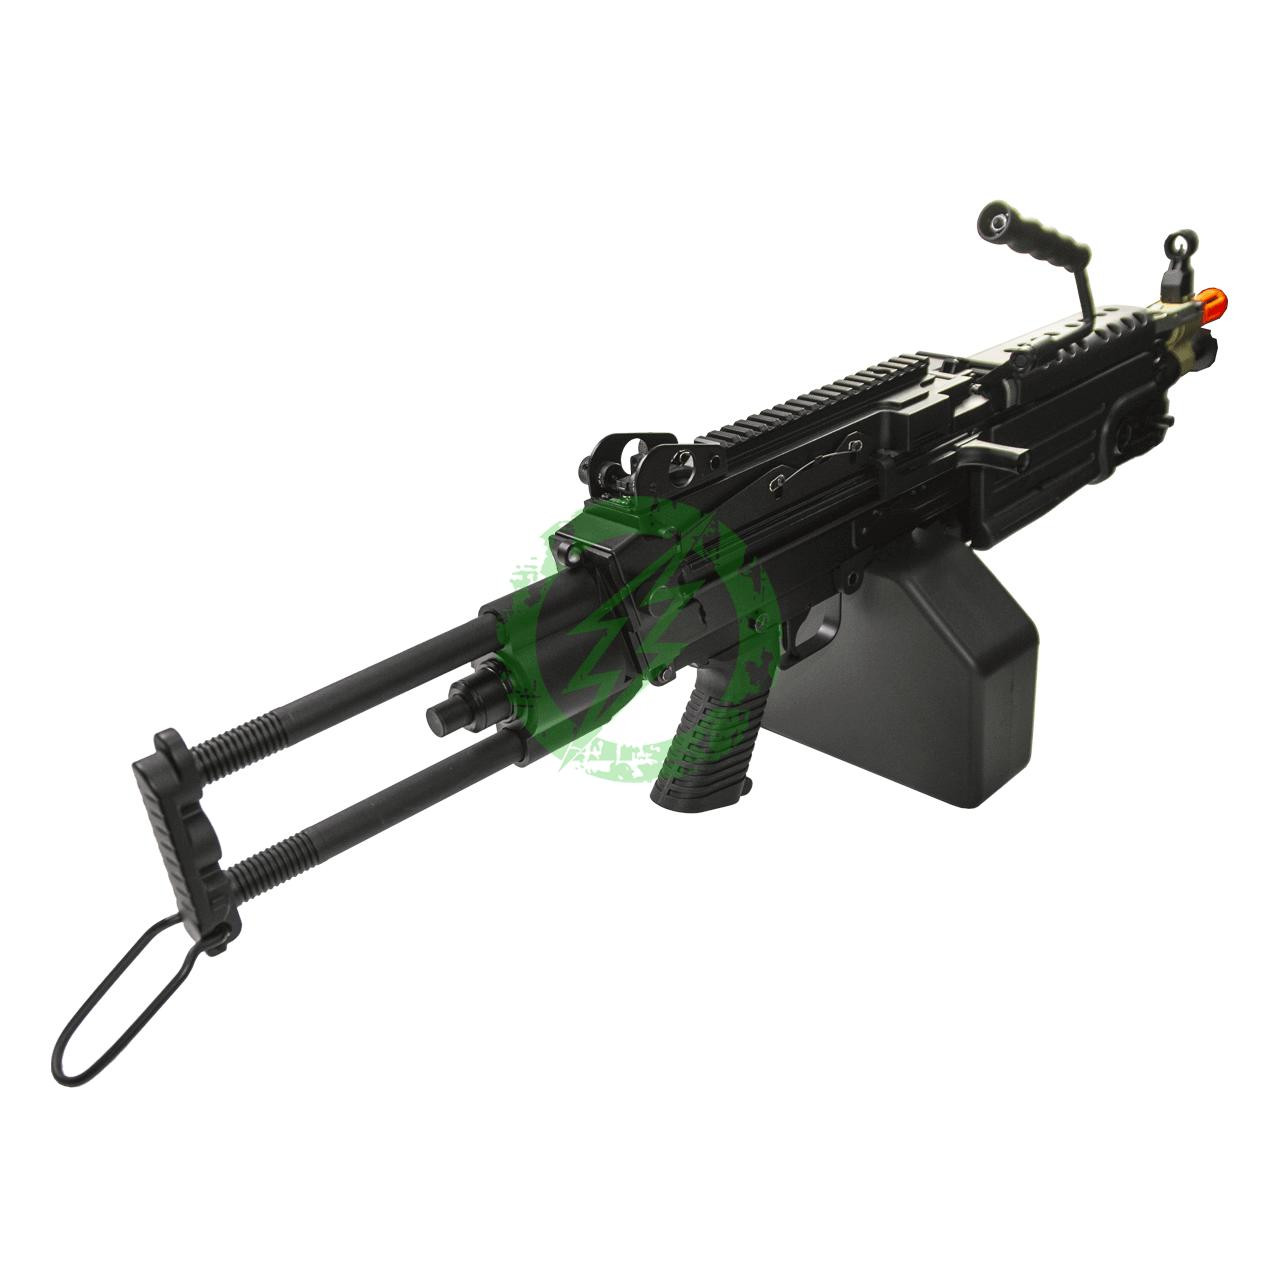  Cybergun A&K FN Licensed Black M249 Airsoft Machine Gun Para 